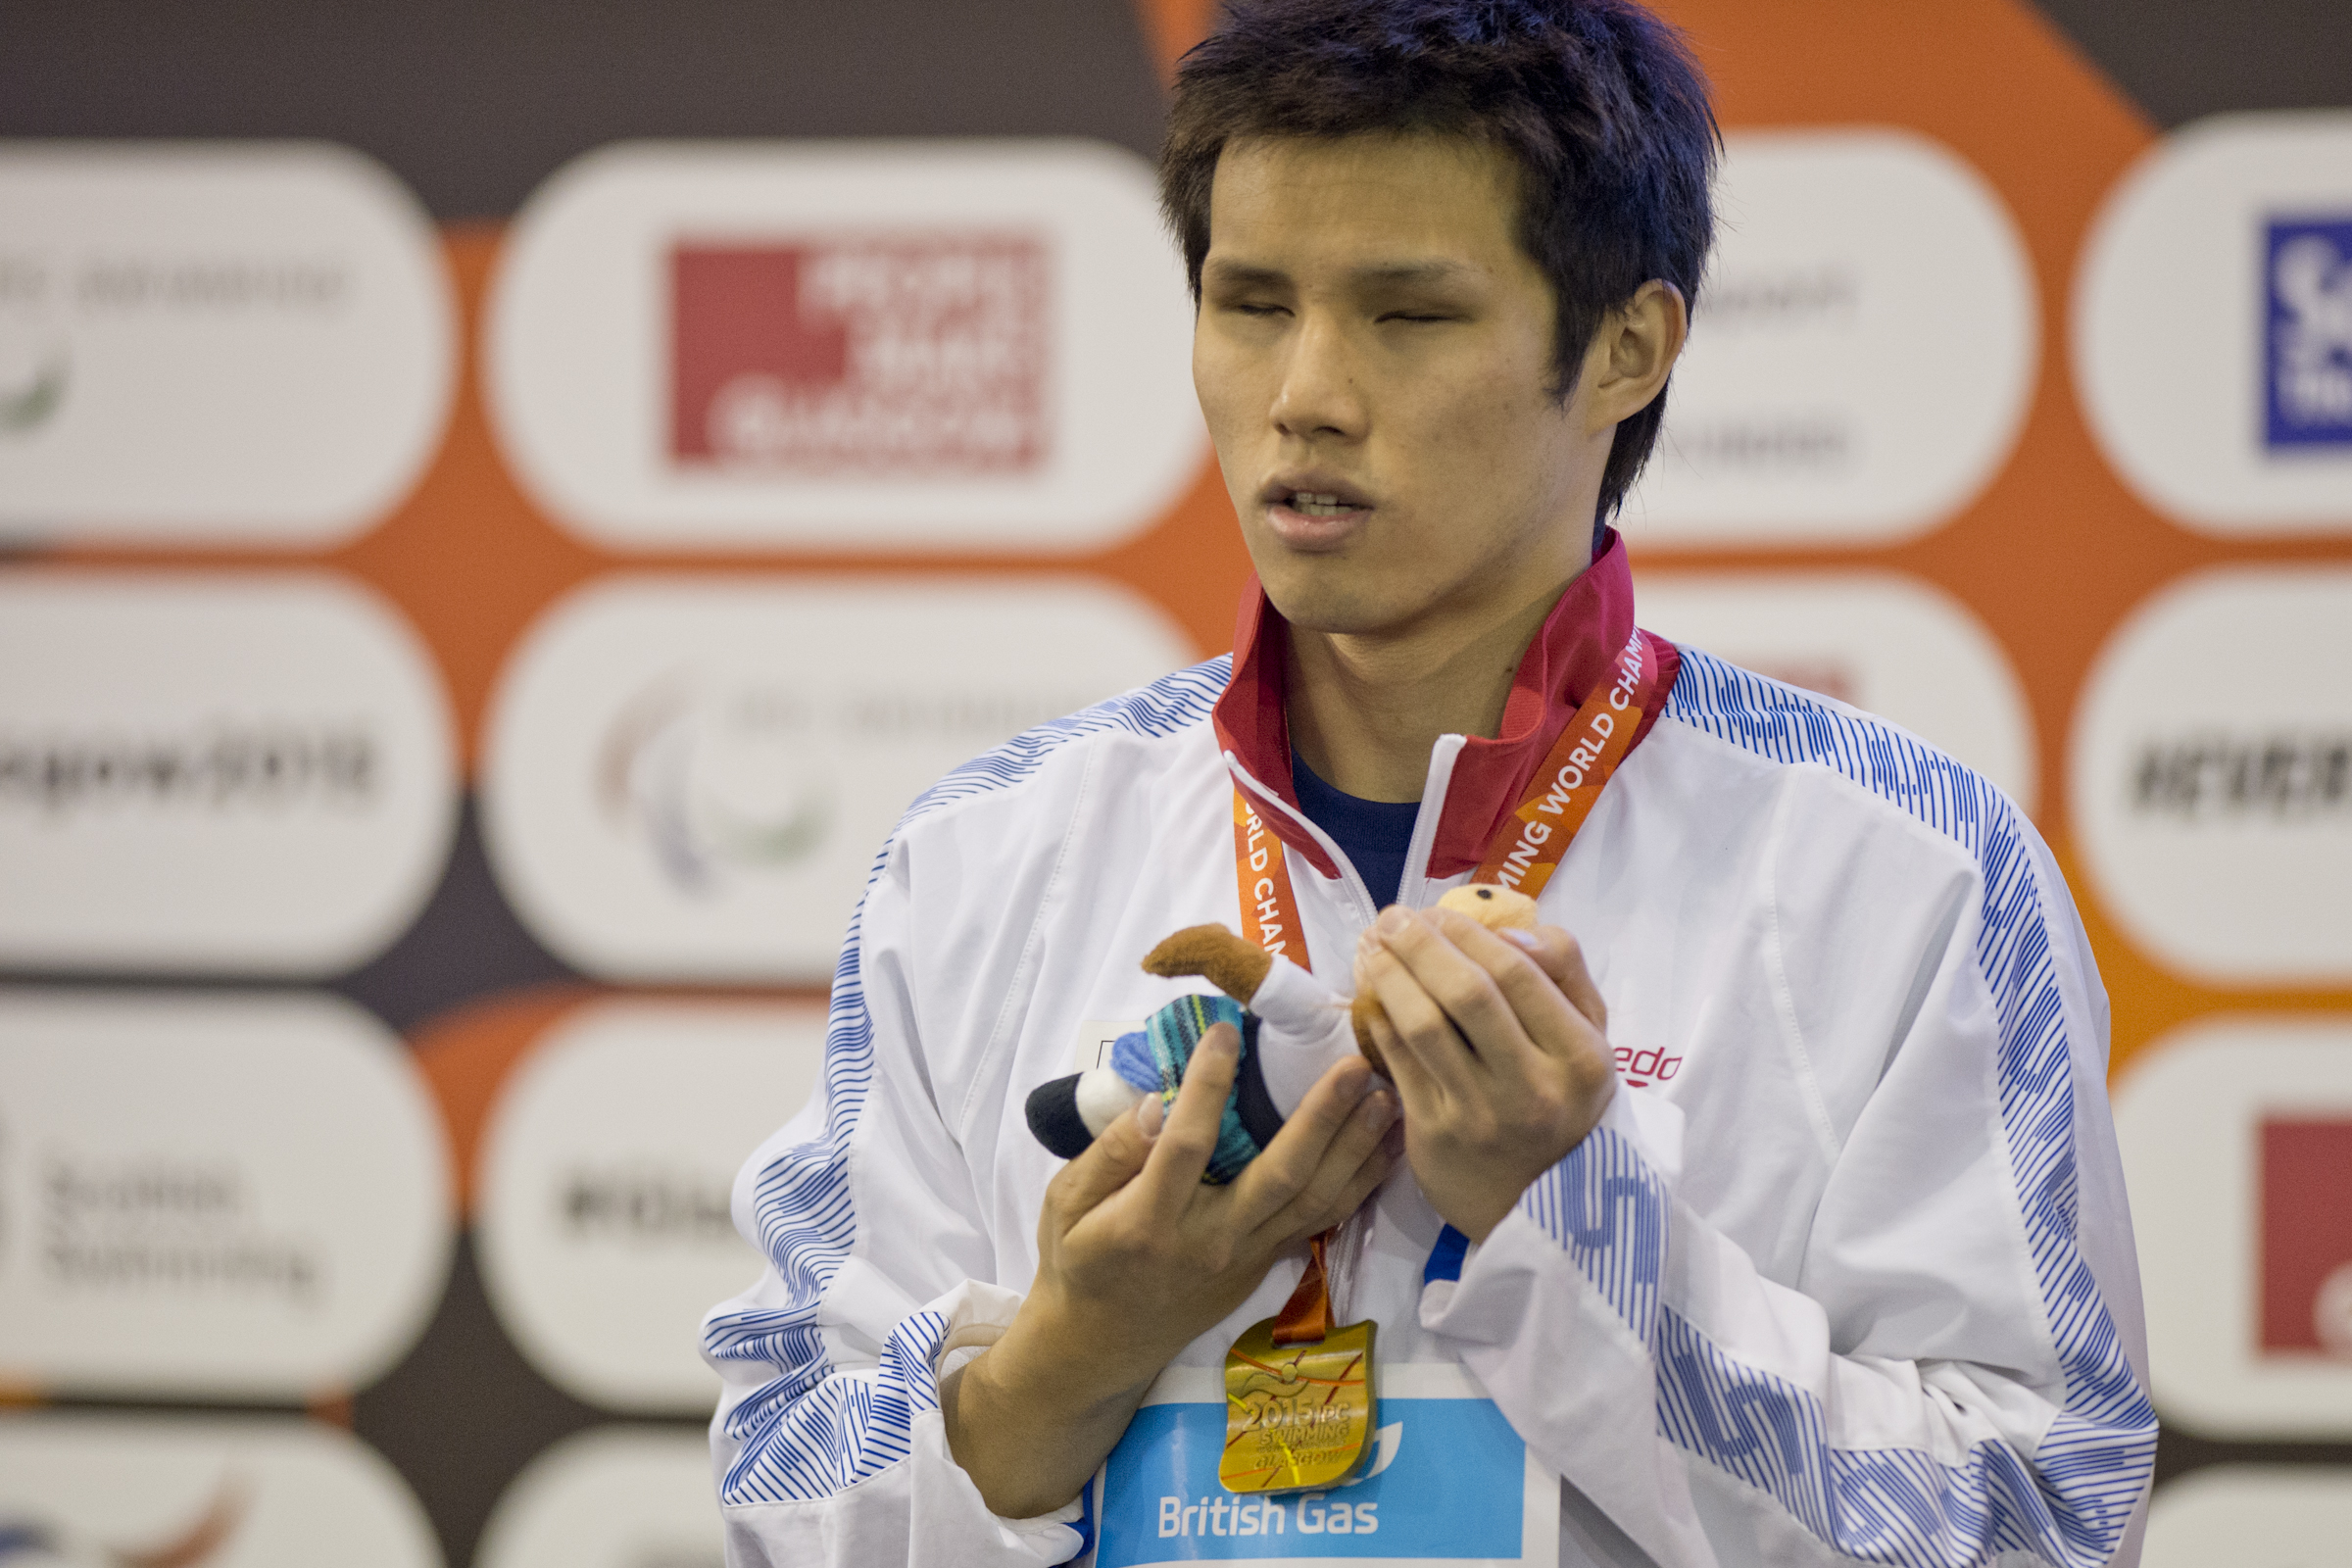 Kimura: My three aims for Rio 2016